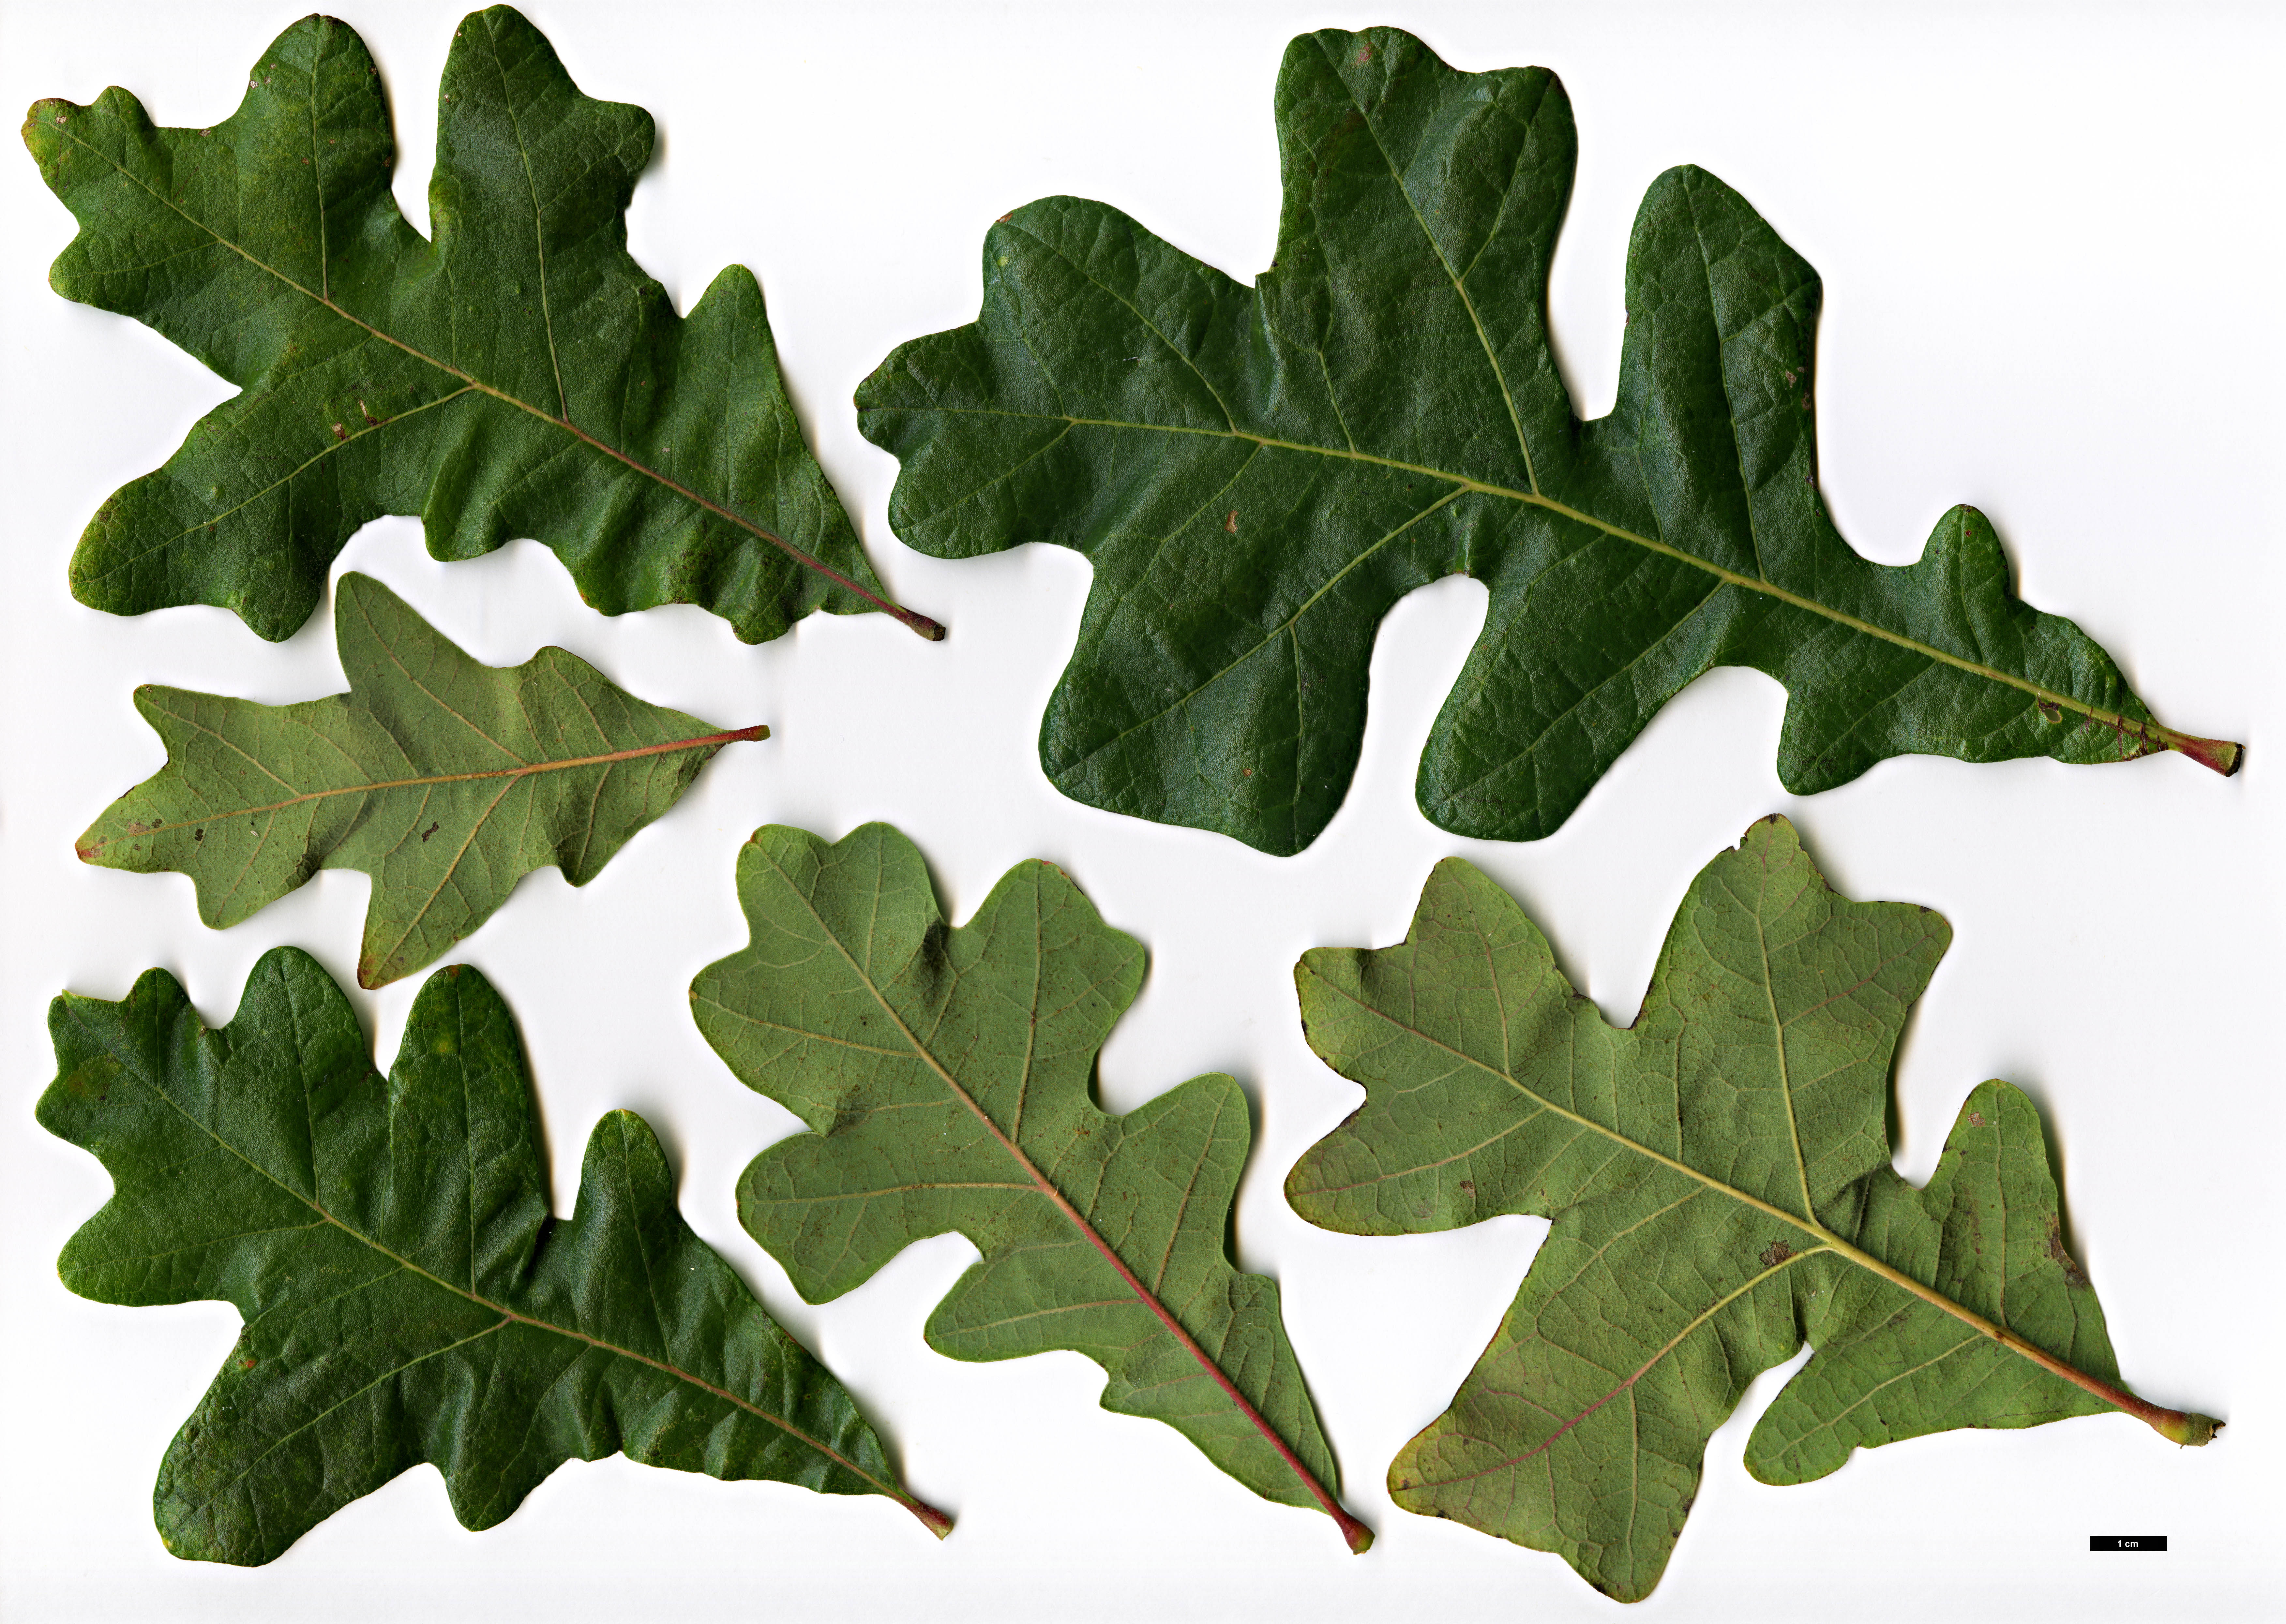 High resolution image: Family: Fagaceae - Genus: Quercus - Taxon: ×guadalupensis (Q.macrocarpa × Q.stellata)